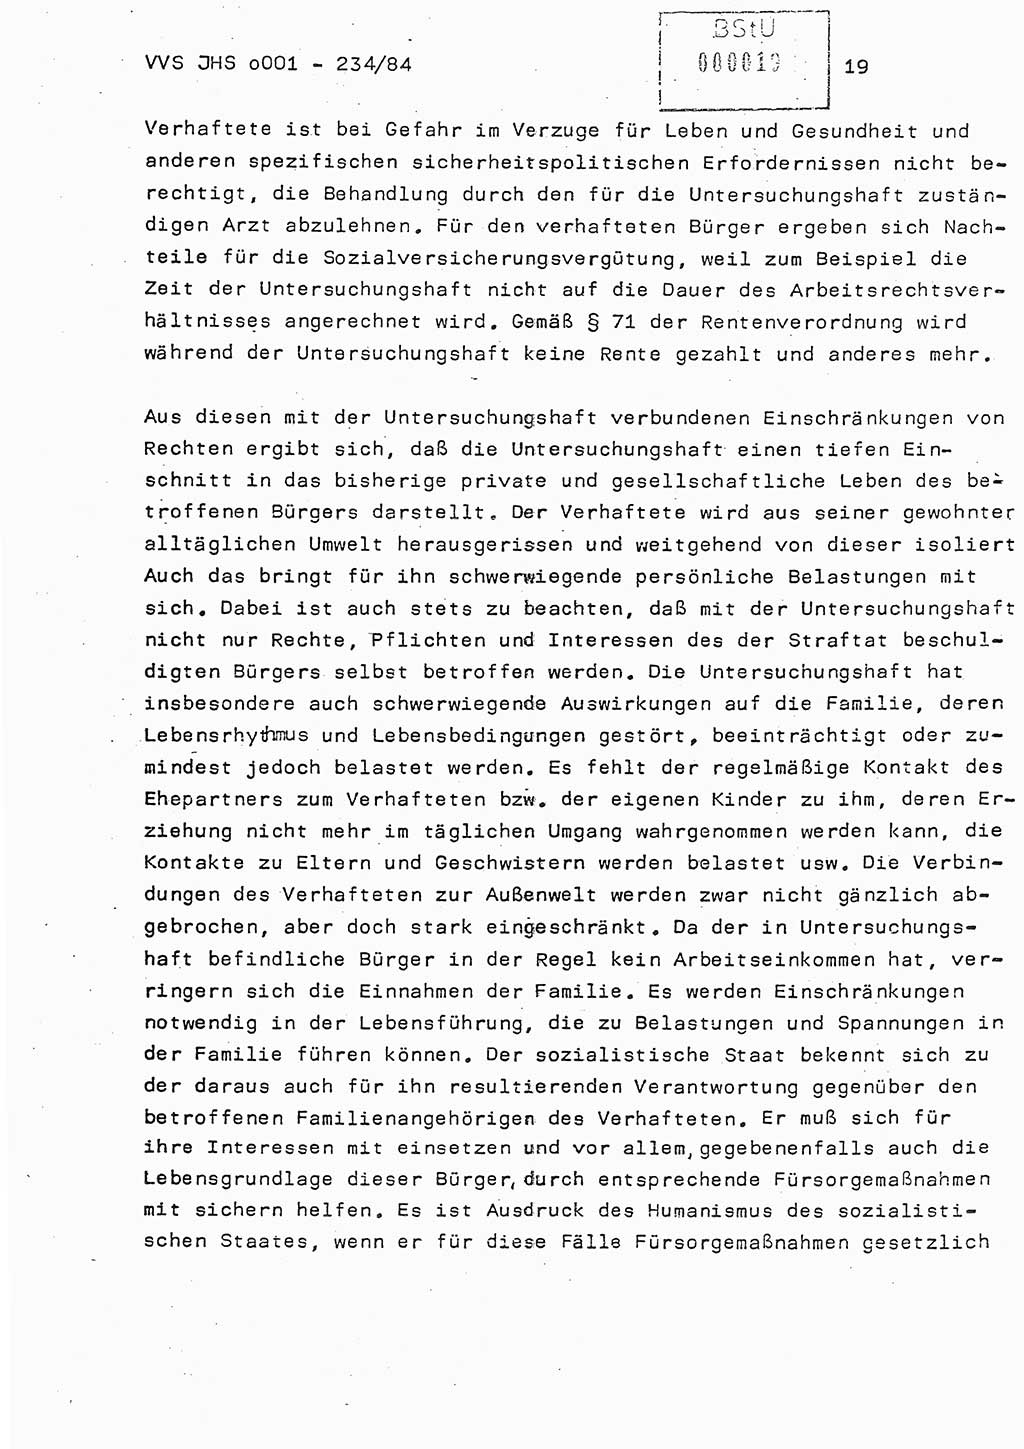 Dissertation Oberst Siegfried Rataizick (Abt. ⅩⅣ), Oberstleutnant Volkmar Heinz (Abt. ⅩⅣ), Oberstleutnant Werner Stein (HA Ⅸ), Hauptmann Heinz Conrad (JHS), Ministerium für Staatssicherheit (MfS) [Deutsche Demokratische Republik (DDR)], Juristische Hochschule (JHS), Vertrauliche Verschlußsache (VVS) o001-234/84, Potsdam 1984, Seite 19 (Diss. MfS DDR JHS VVS o001-234/84 1984, S. 19)